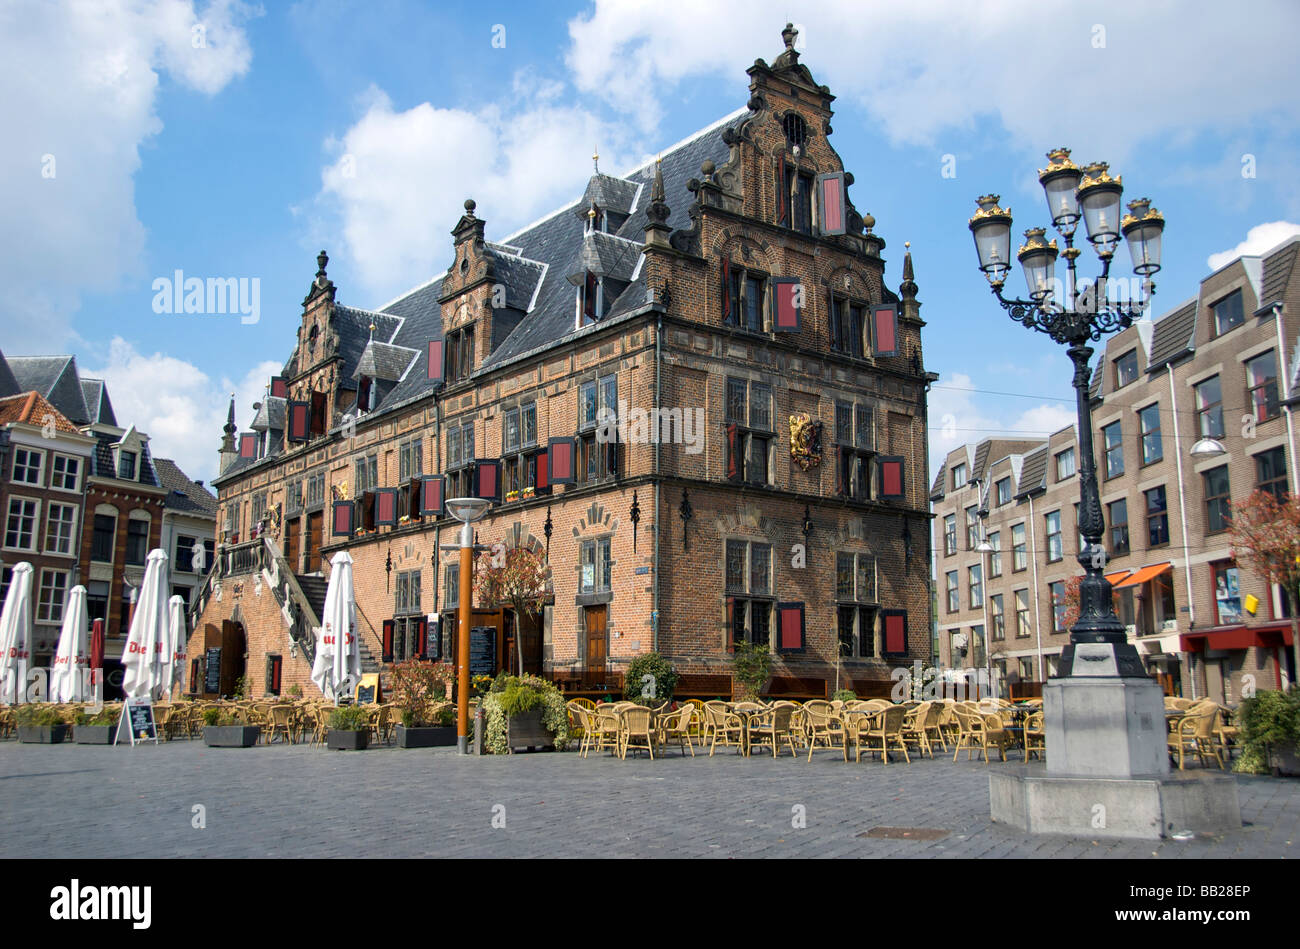 Europa, Países Bajos, Gelderland, Nijmegen, Grote Markt, Waag o Waaghouis pesan, La casa fue construida en 1612 Foto de stock